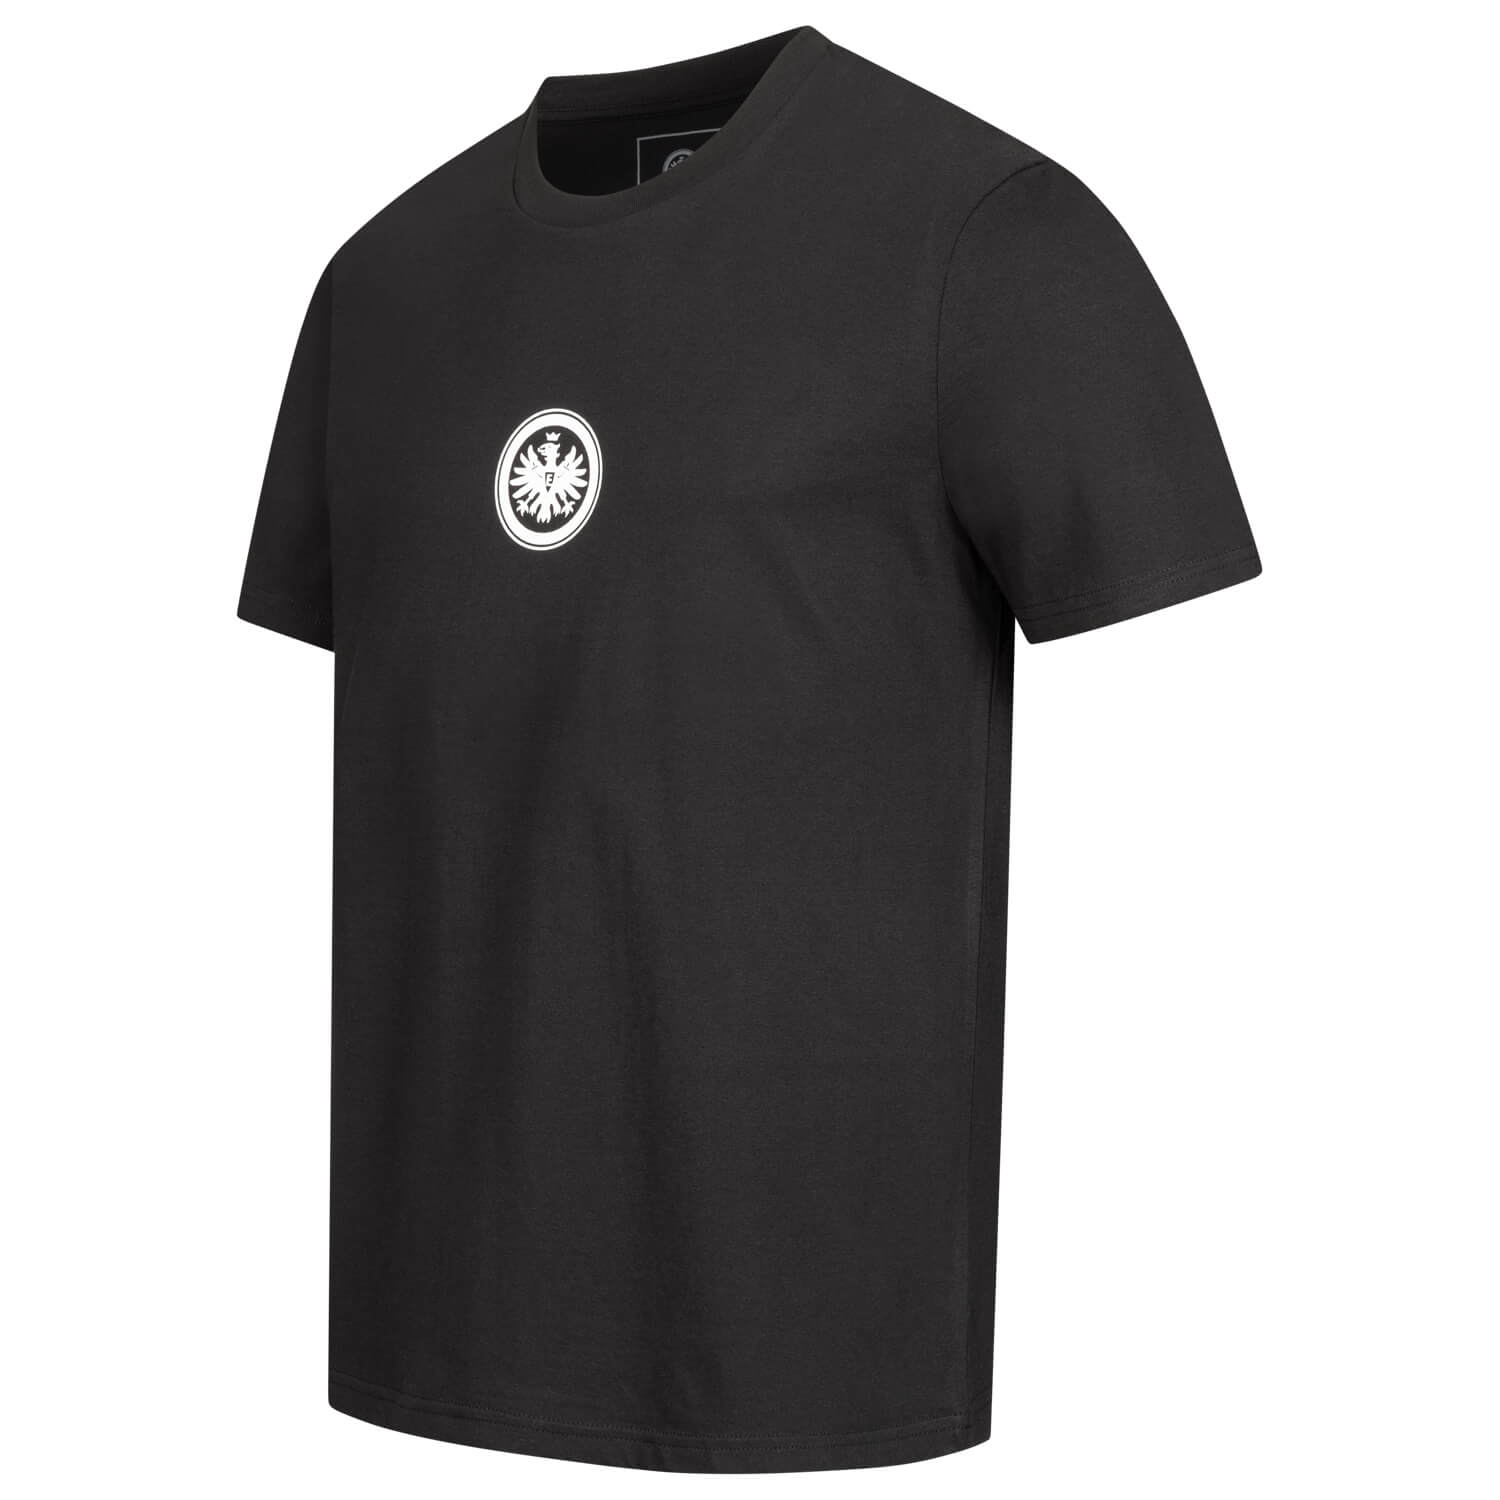 Bild 3: T-Shirt Ein Verein Schwarz